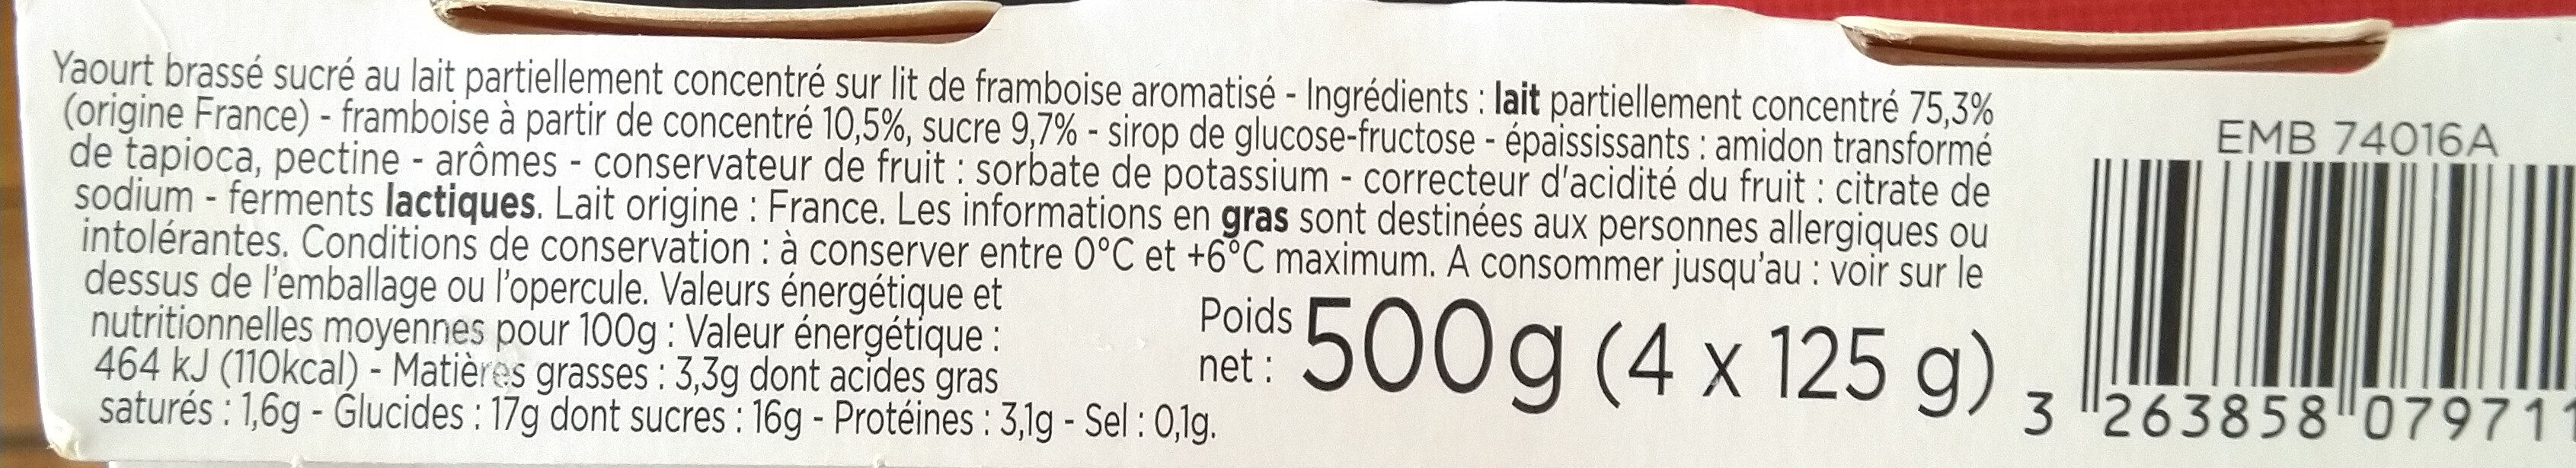 yaourt brassé lait entier lit framboise - Ingredientes - fr